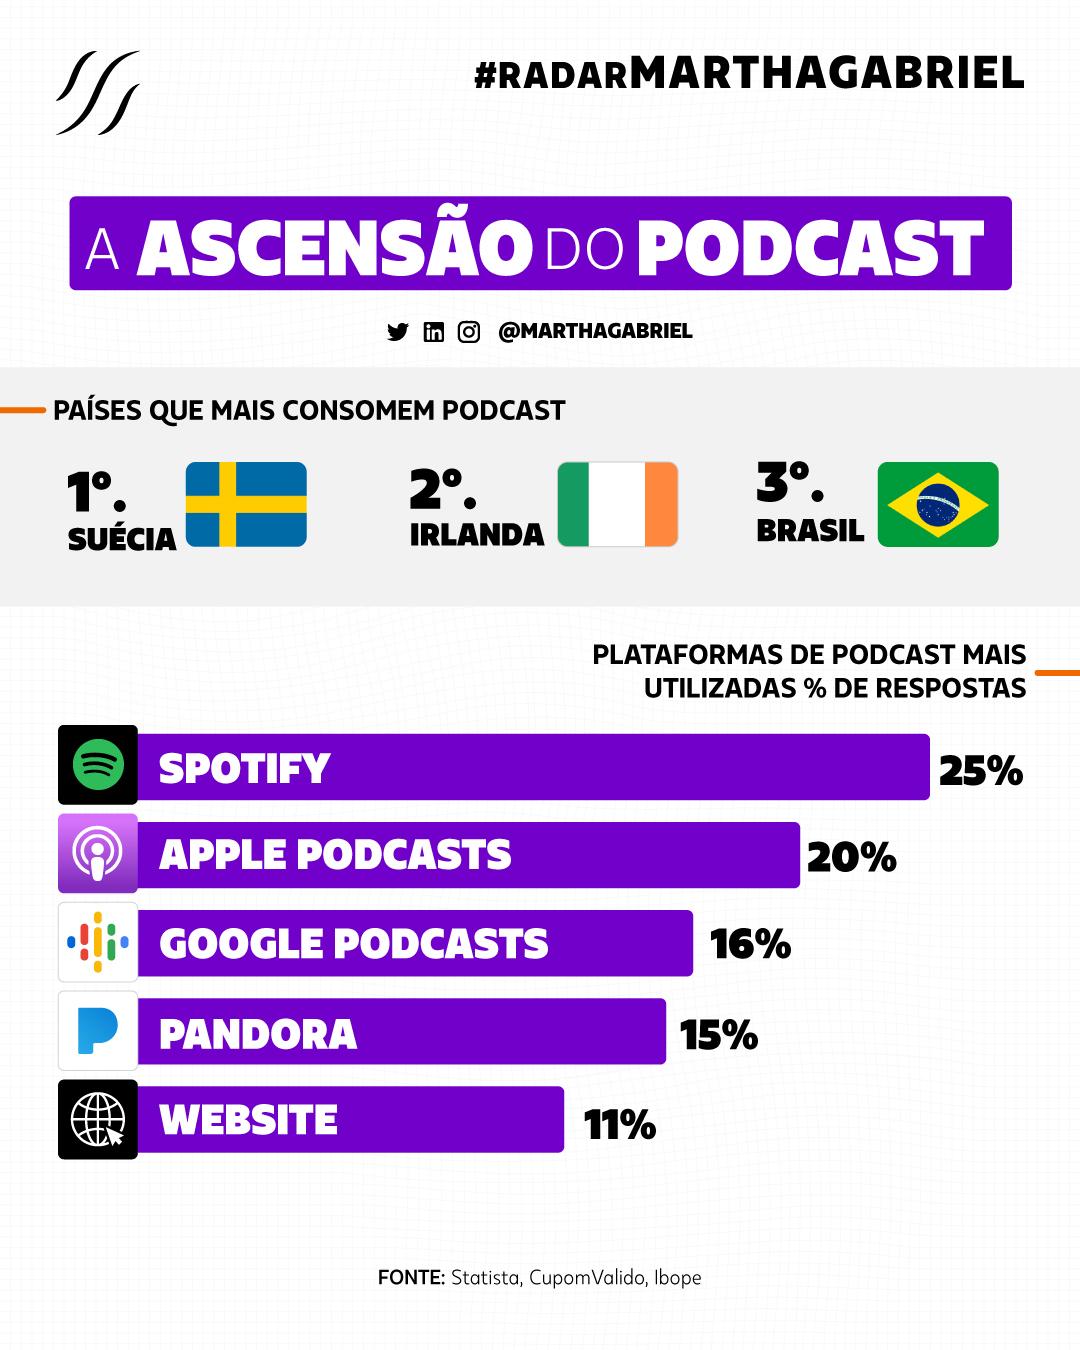 A ascensão do podcast